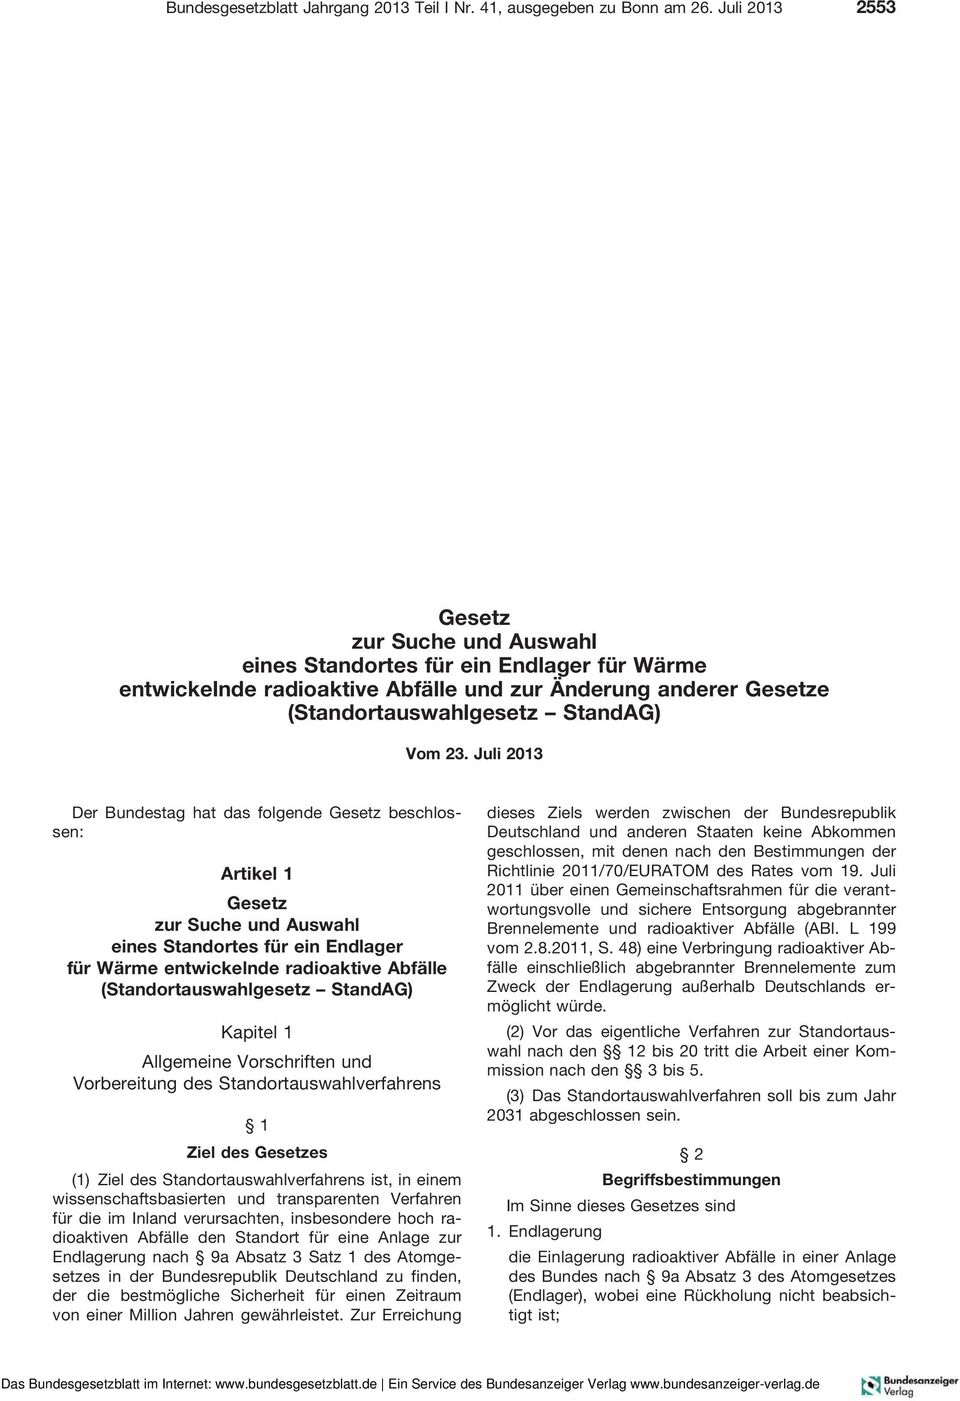 Juli 2013 Der Bundestag hat das folgende Gesetz beschlossen: Artikel 1 Gesetz zur Suche und Auswahl einesstandortesfüreinendlager für Wärme entwickelnde radioaktive Abfälle (Standortauswahlgesetz